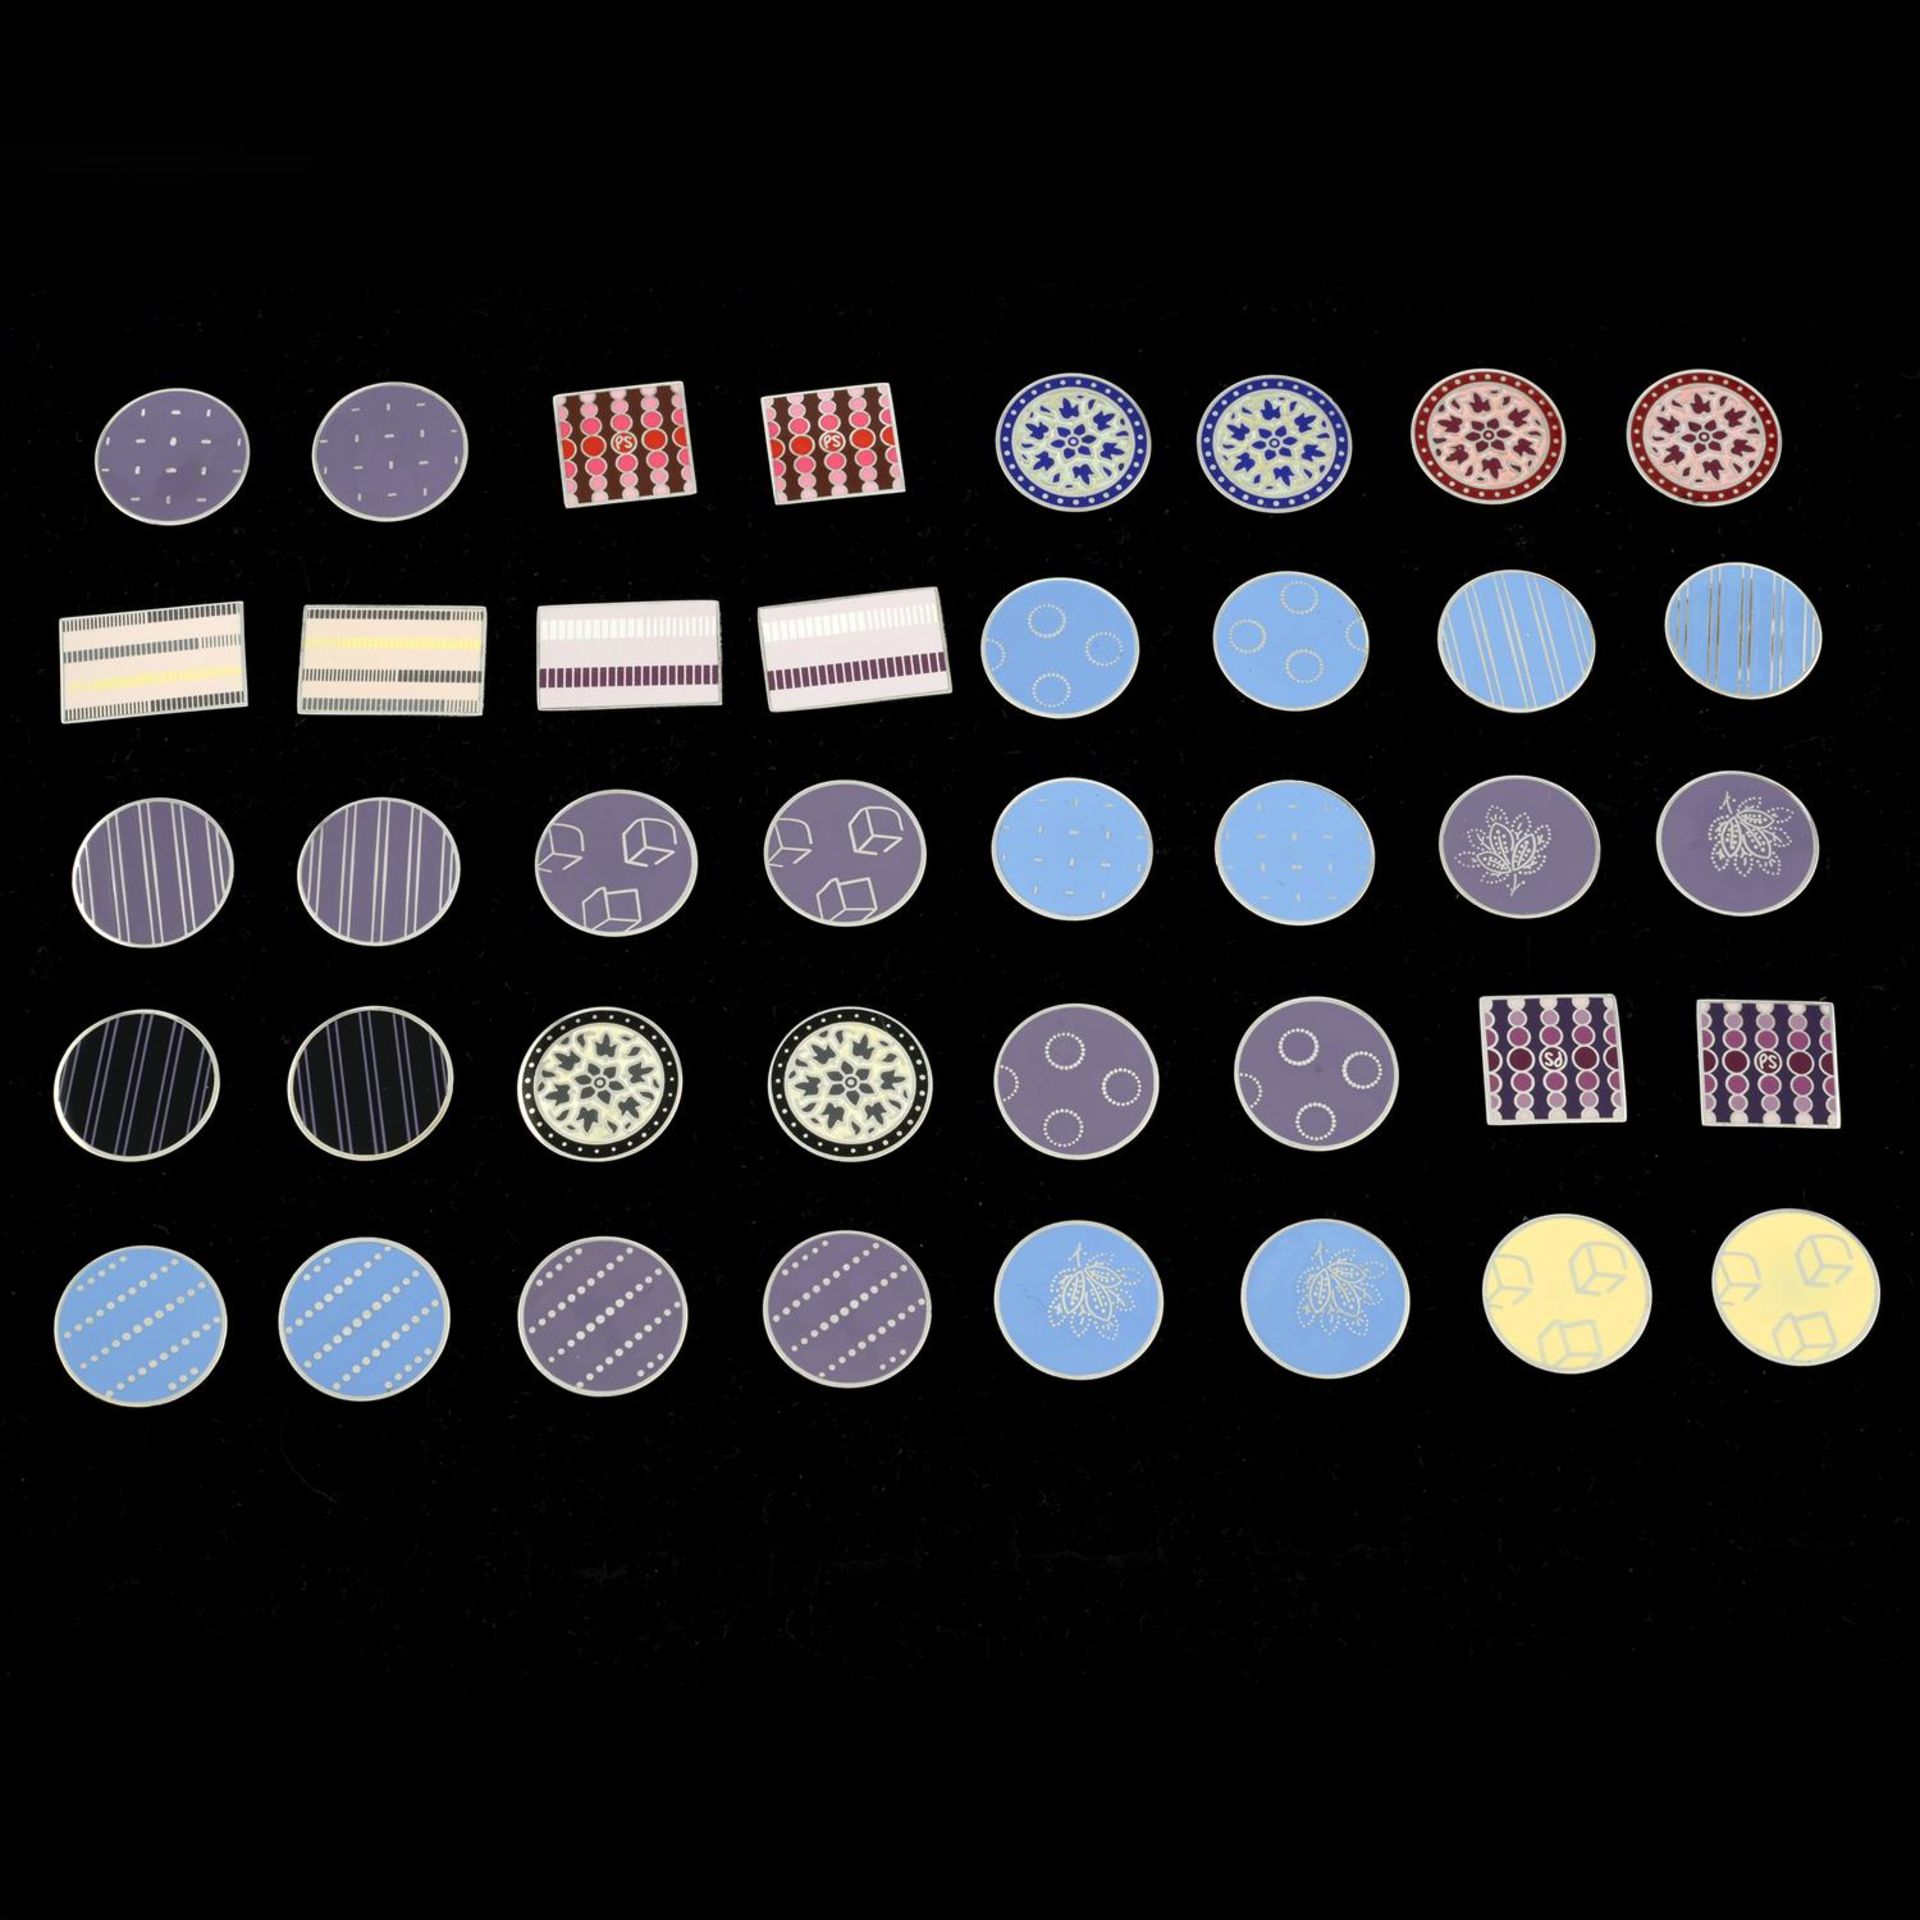 Twenty pairs of enamel cufflinks, by Paul Smith.